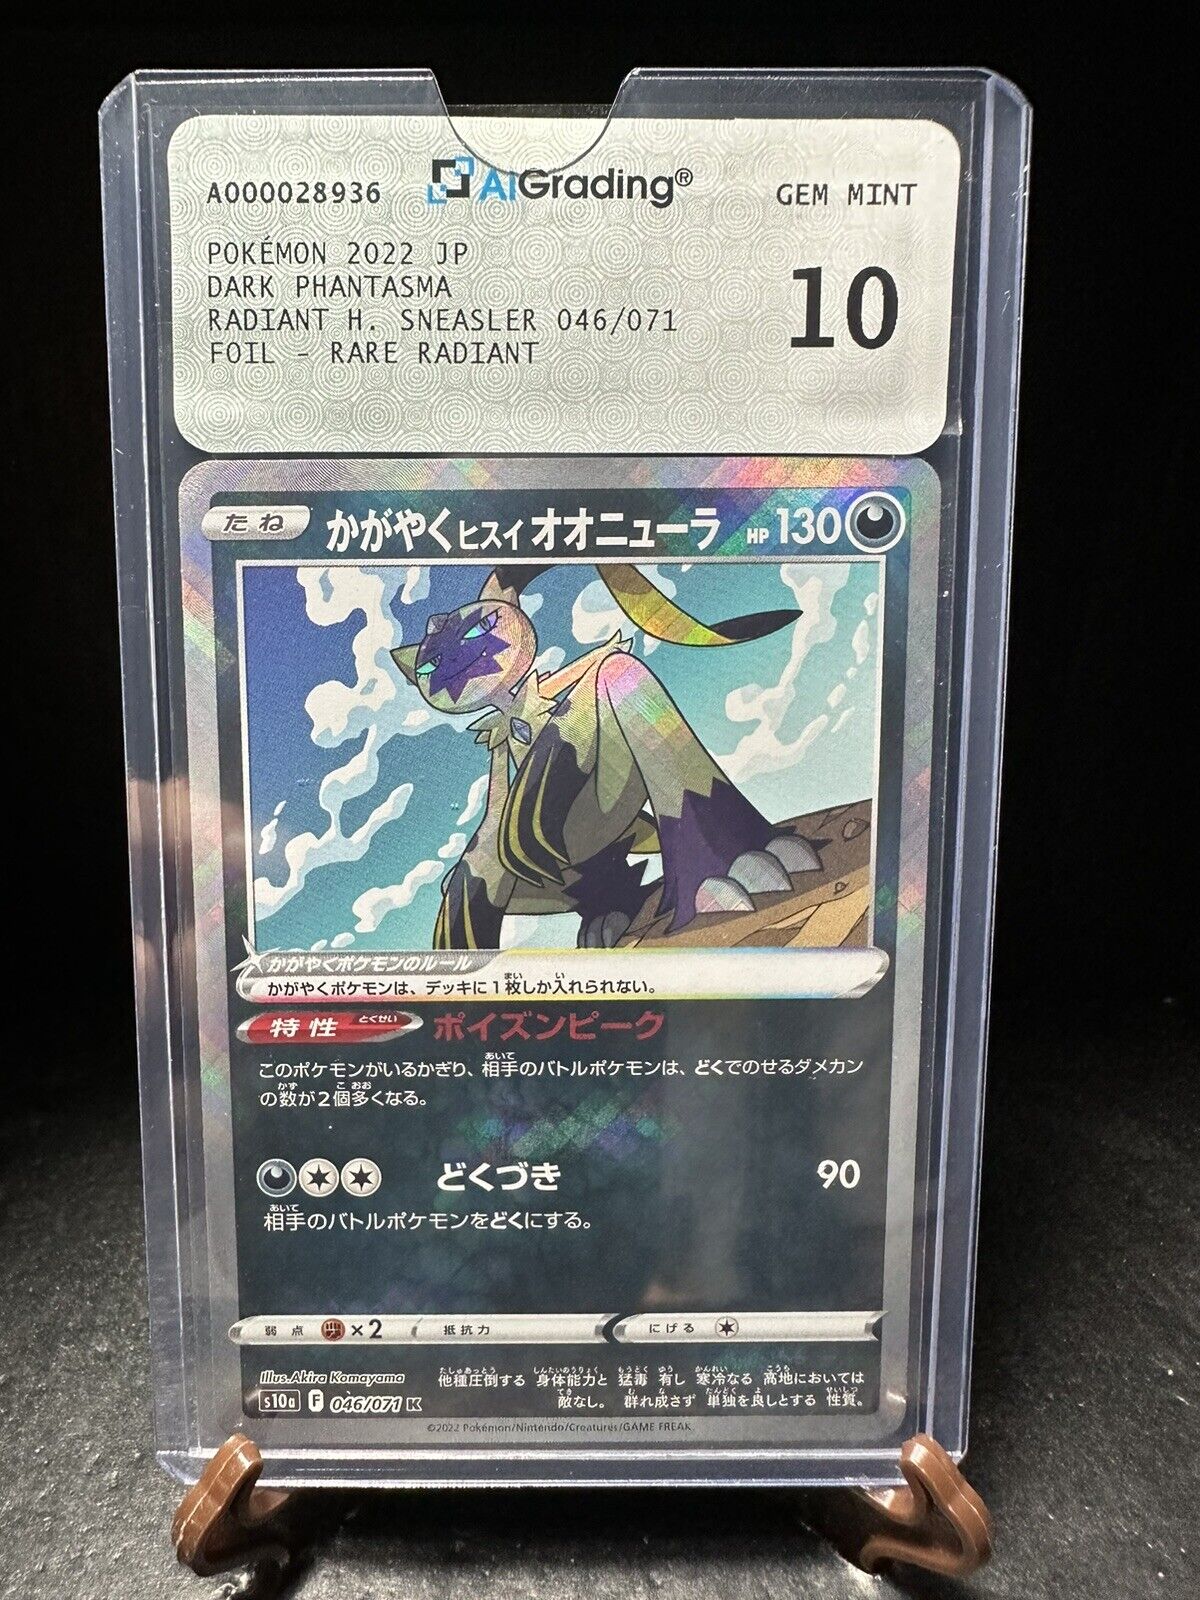 Pokemon - RADIANT H. SNEASLER 046/071 Japan AiGrading10 Gem Mint (Psa10,Bgs10)